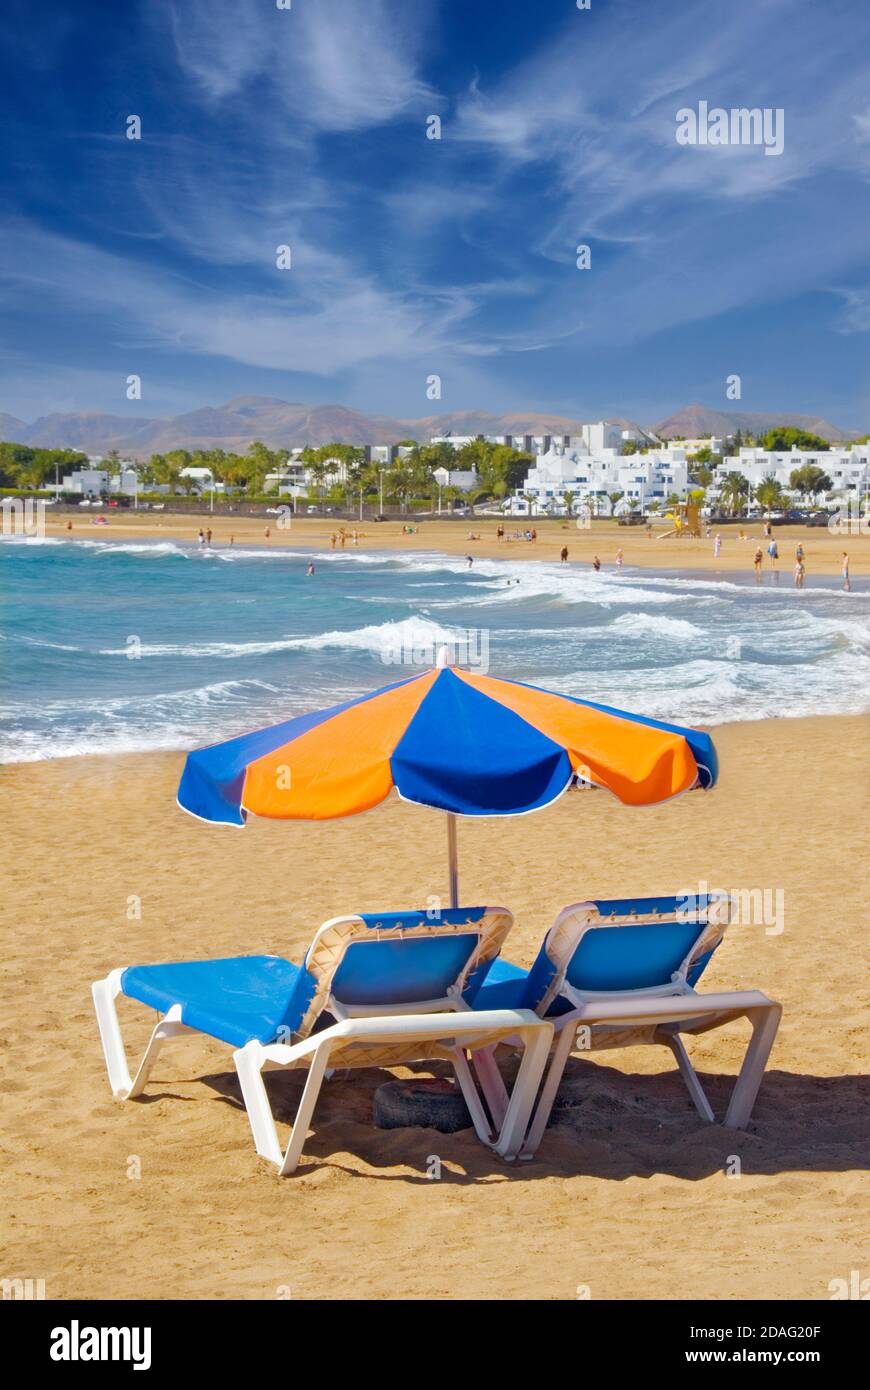 Vacanza concetto Playa del Carmen spiaggia Parasol lettino costa spiaggia sabbiosa con ombrellone e lettini, Lanzarote, Isole Canarie, Spagna Foto Stock